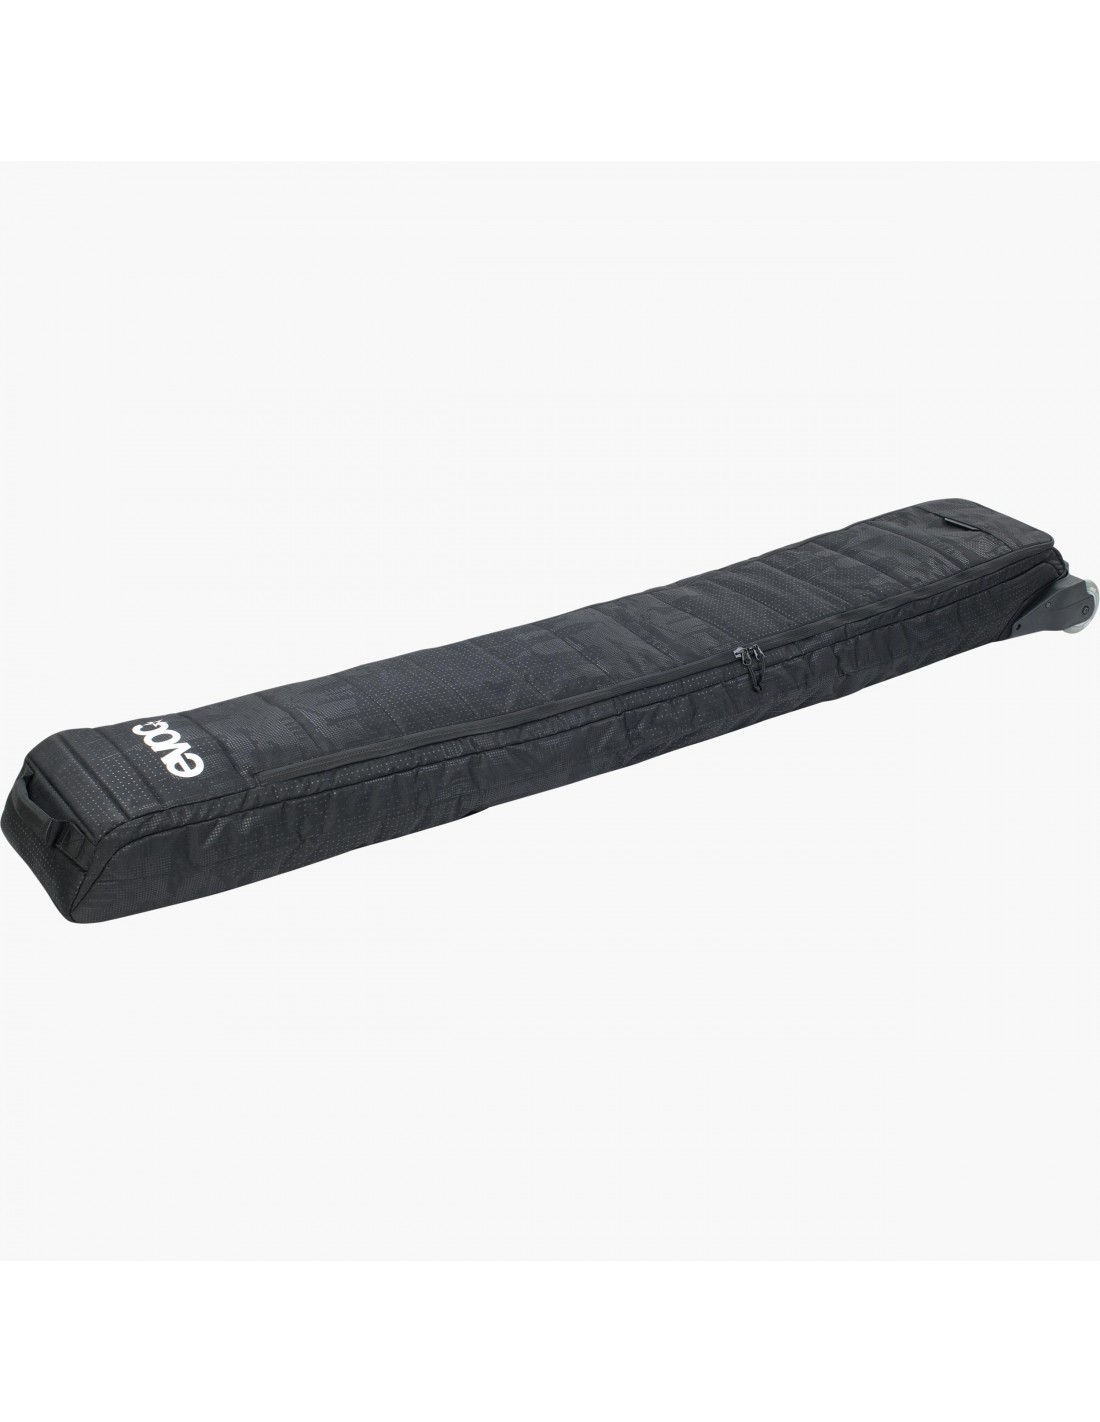 Evoc Ski Roller XL (für Ski bis 195cm) , Black günstig online kaufen